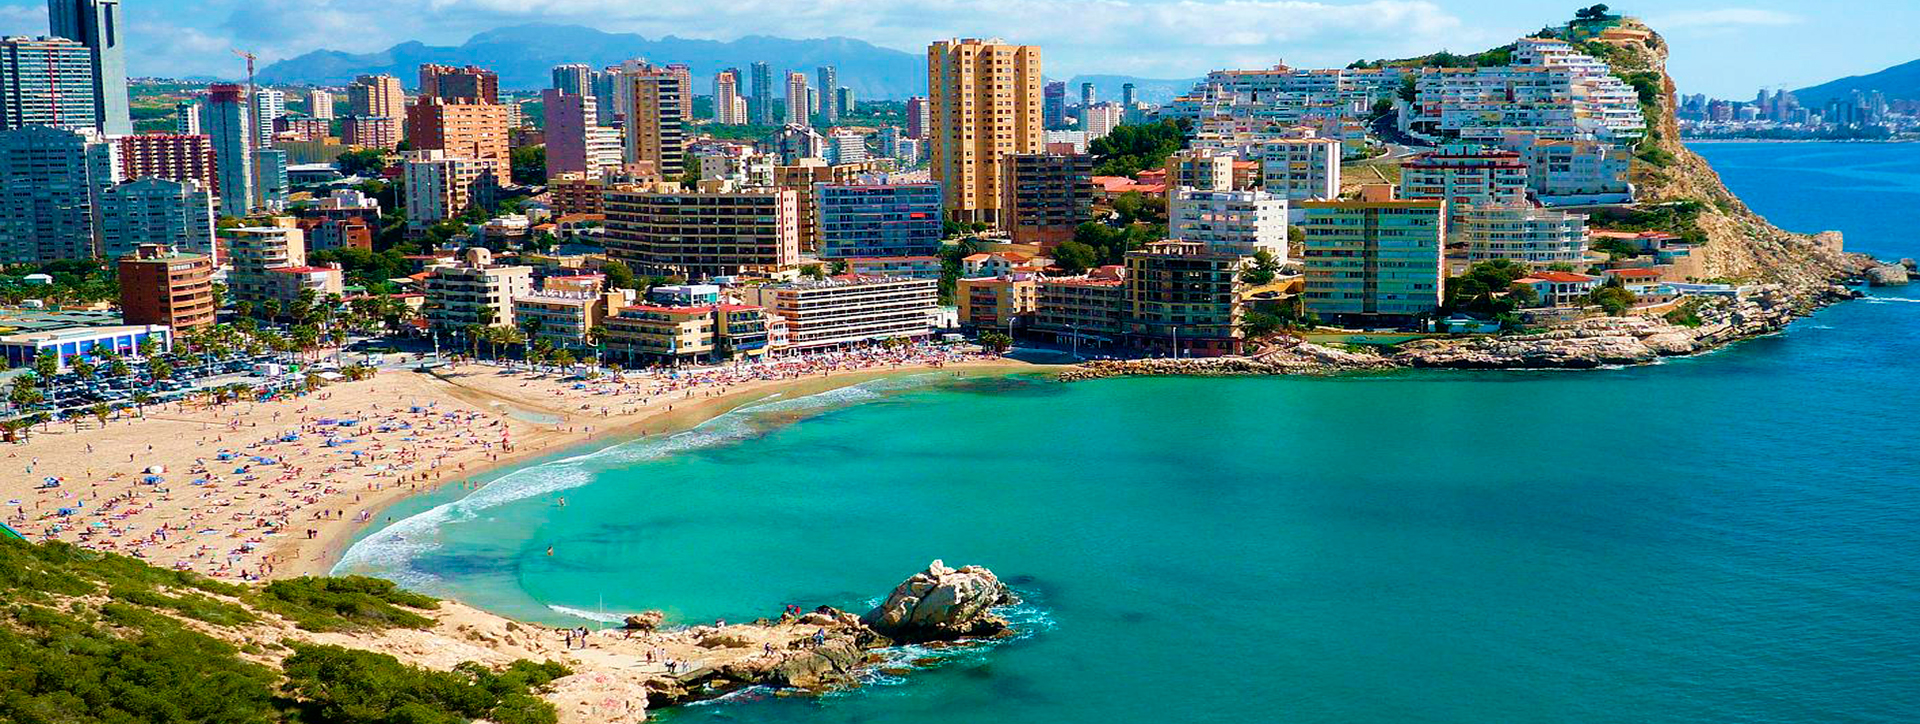 Luna Vista Inmobiliaria, pisos en venta en Alicante, Alquiler de pisos en Alicante, Tus pisos en venta y alquiler en  Alicante, INMOBILIARIA Alicante